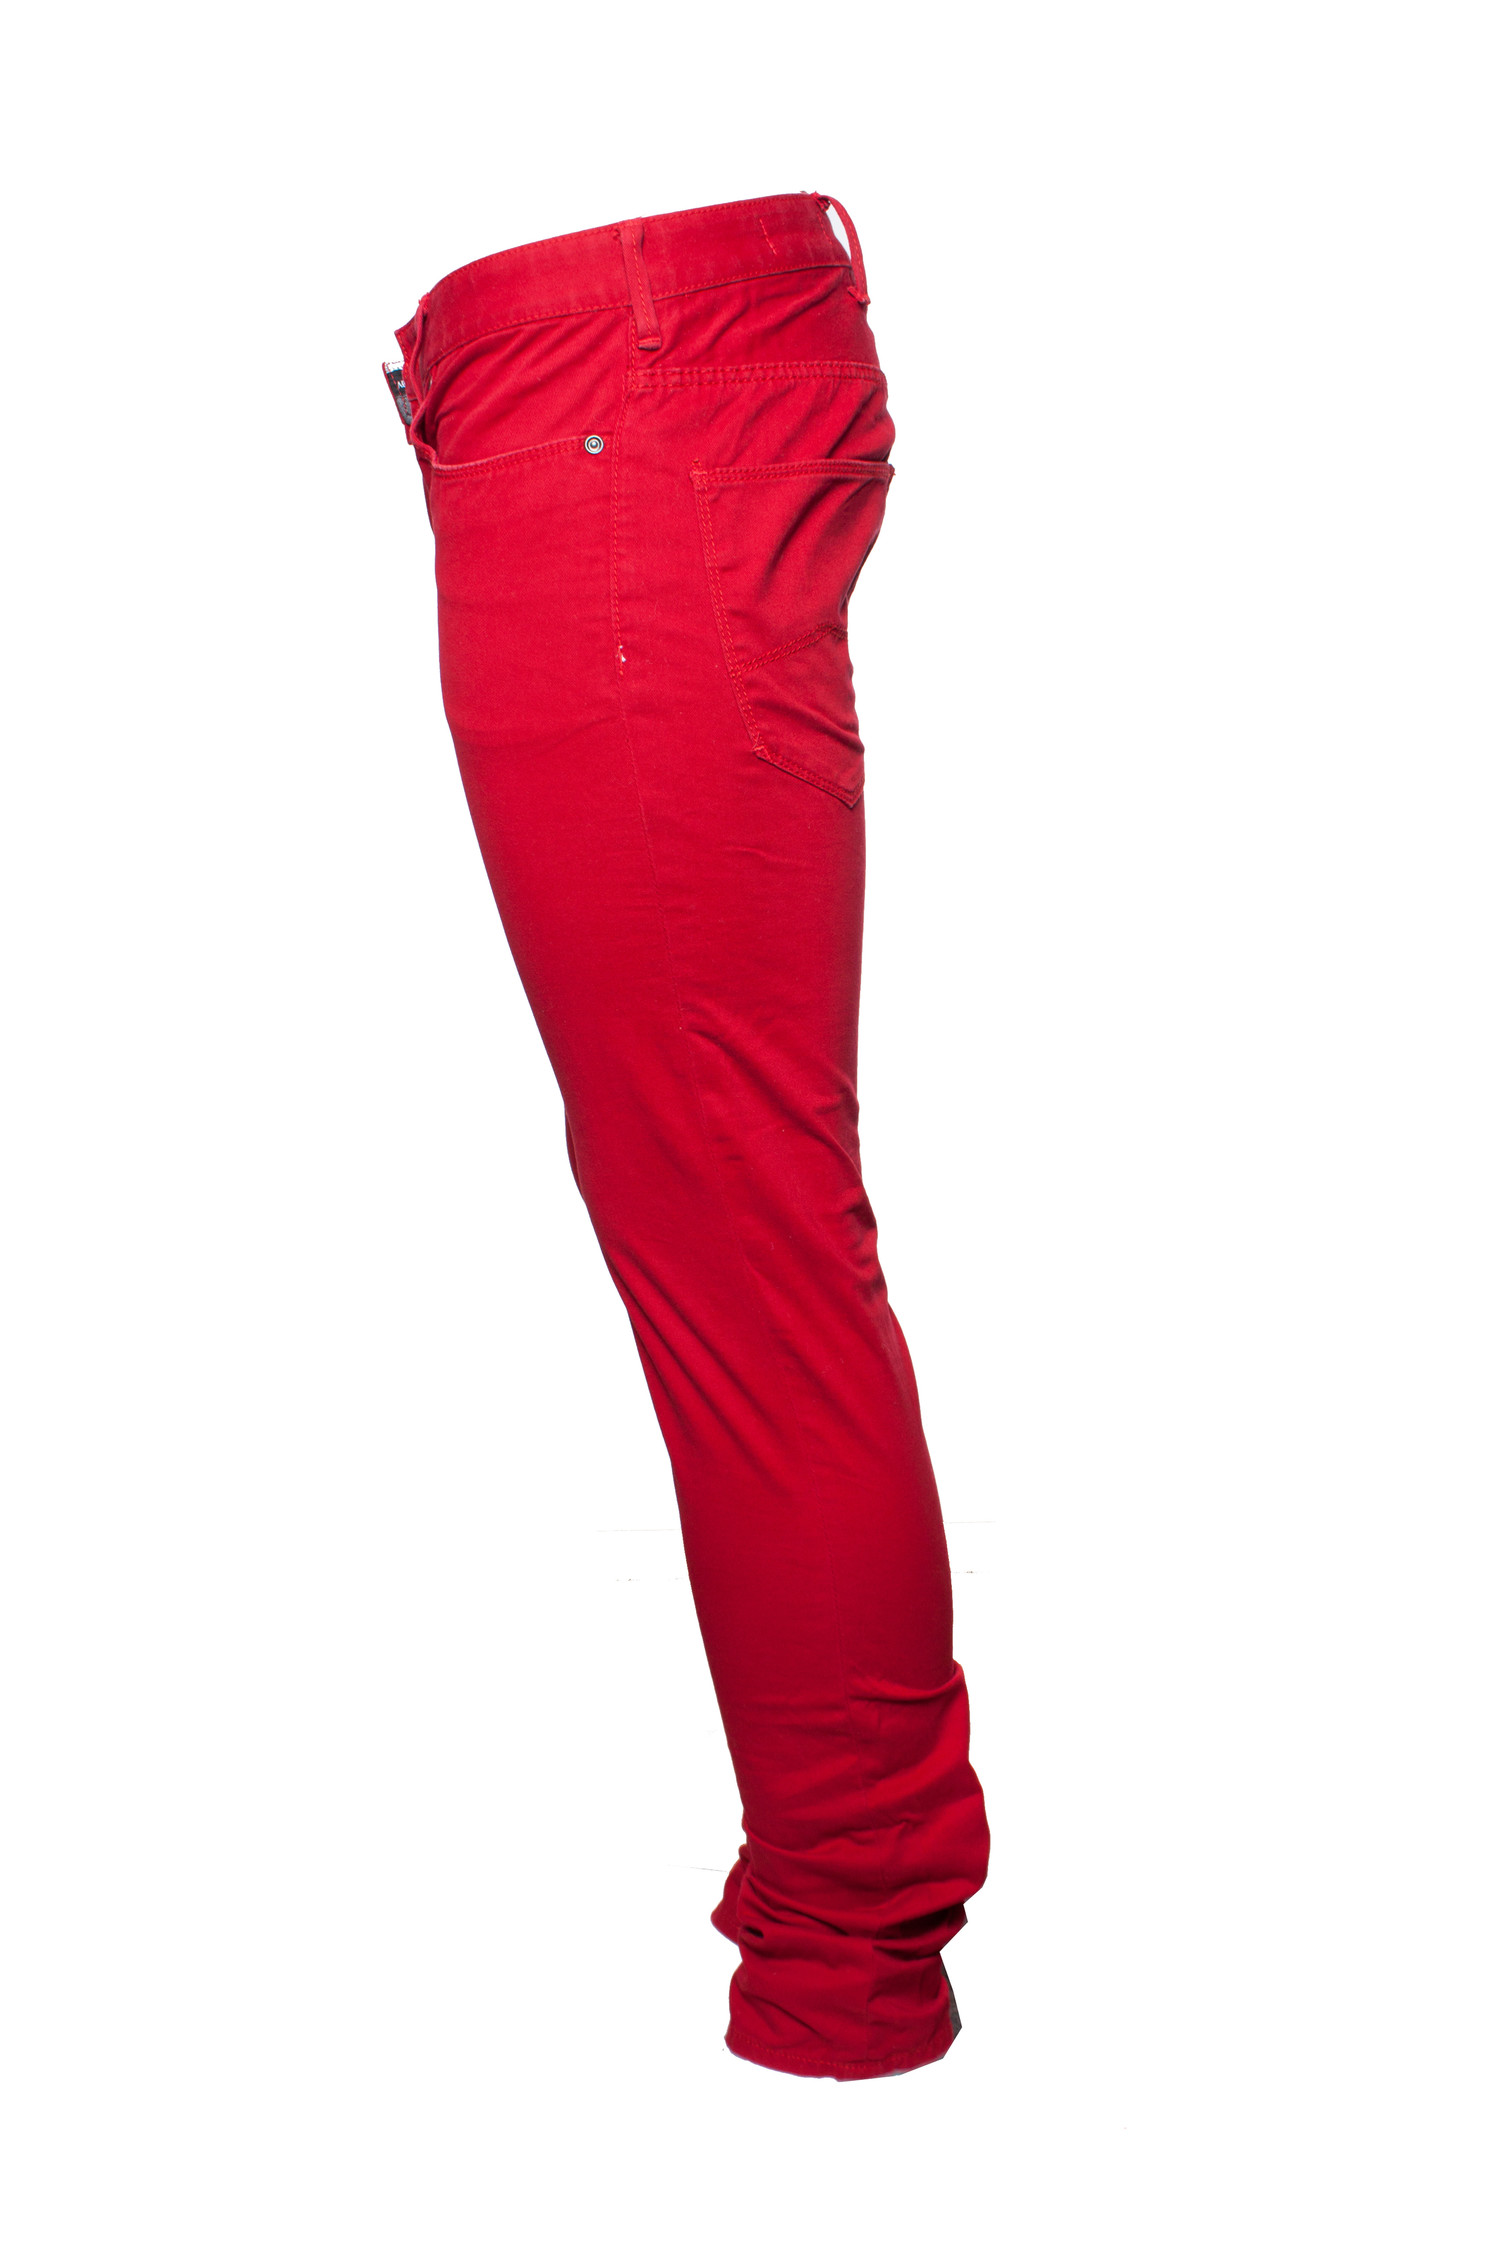 verbrand Cusco Filosofisch Armani Jeans, Rode spijkerbroek in maat W29/S. - Unique Designer Pieces